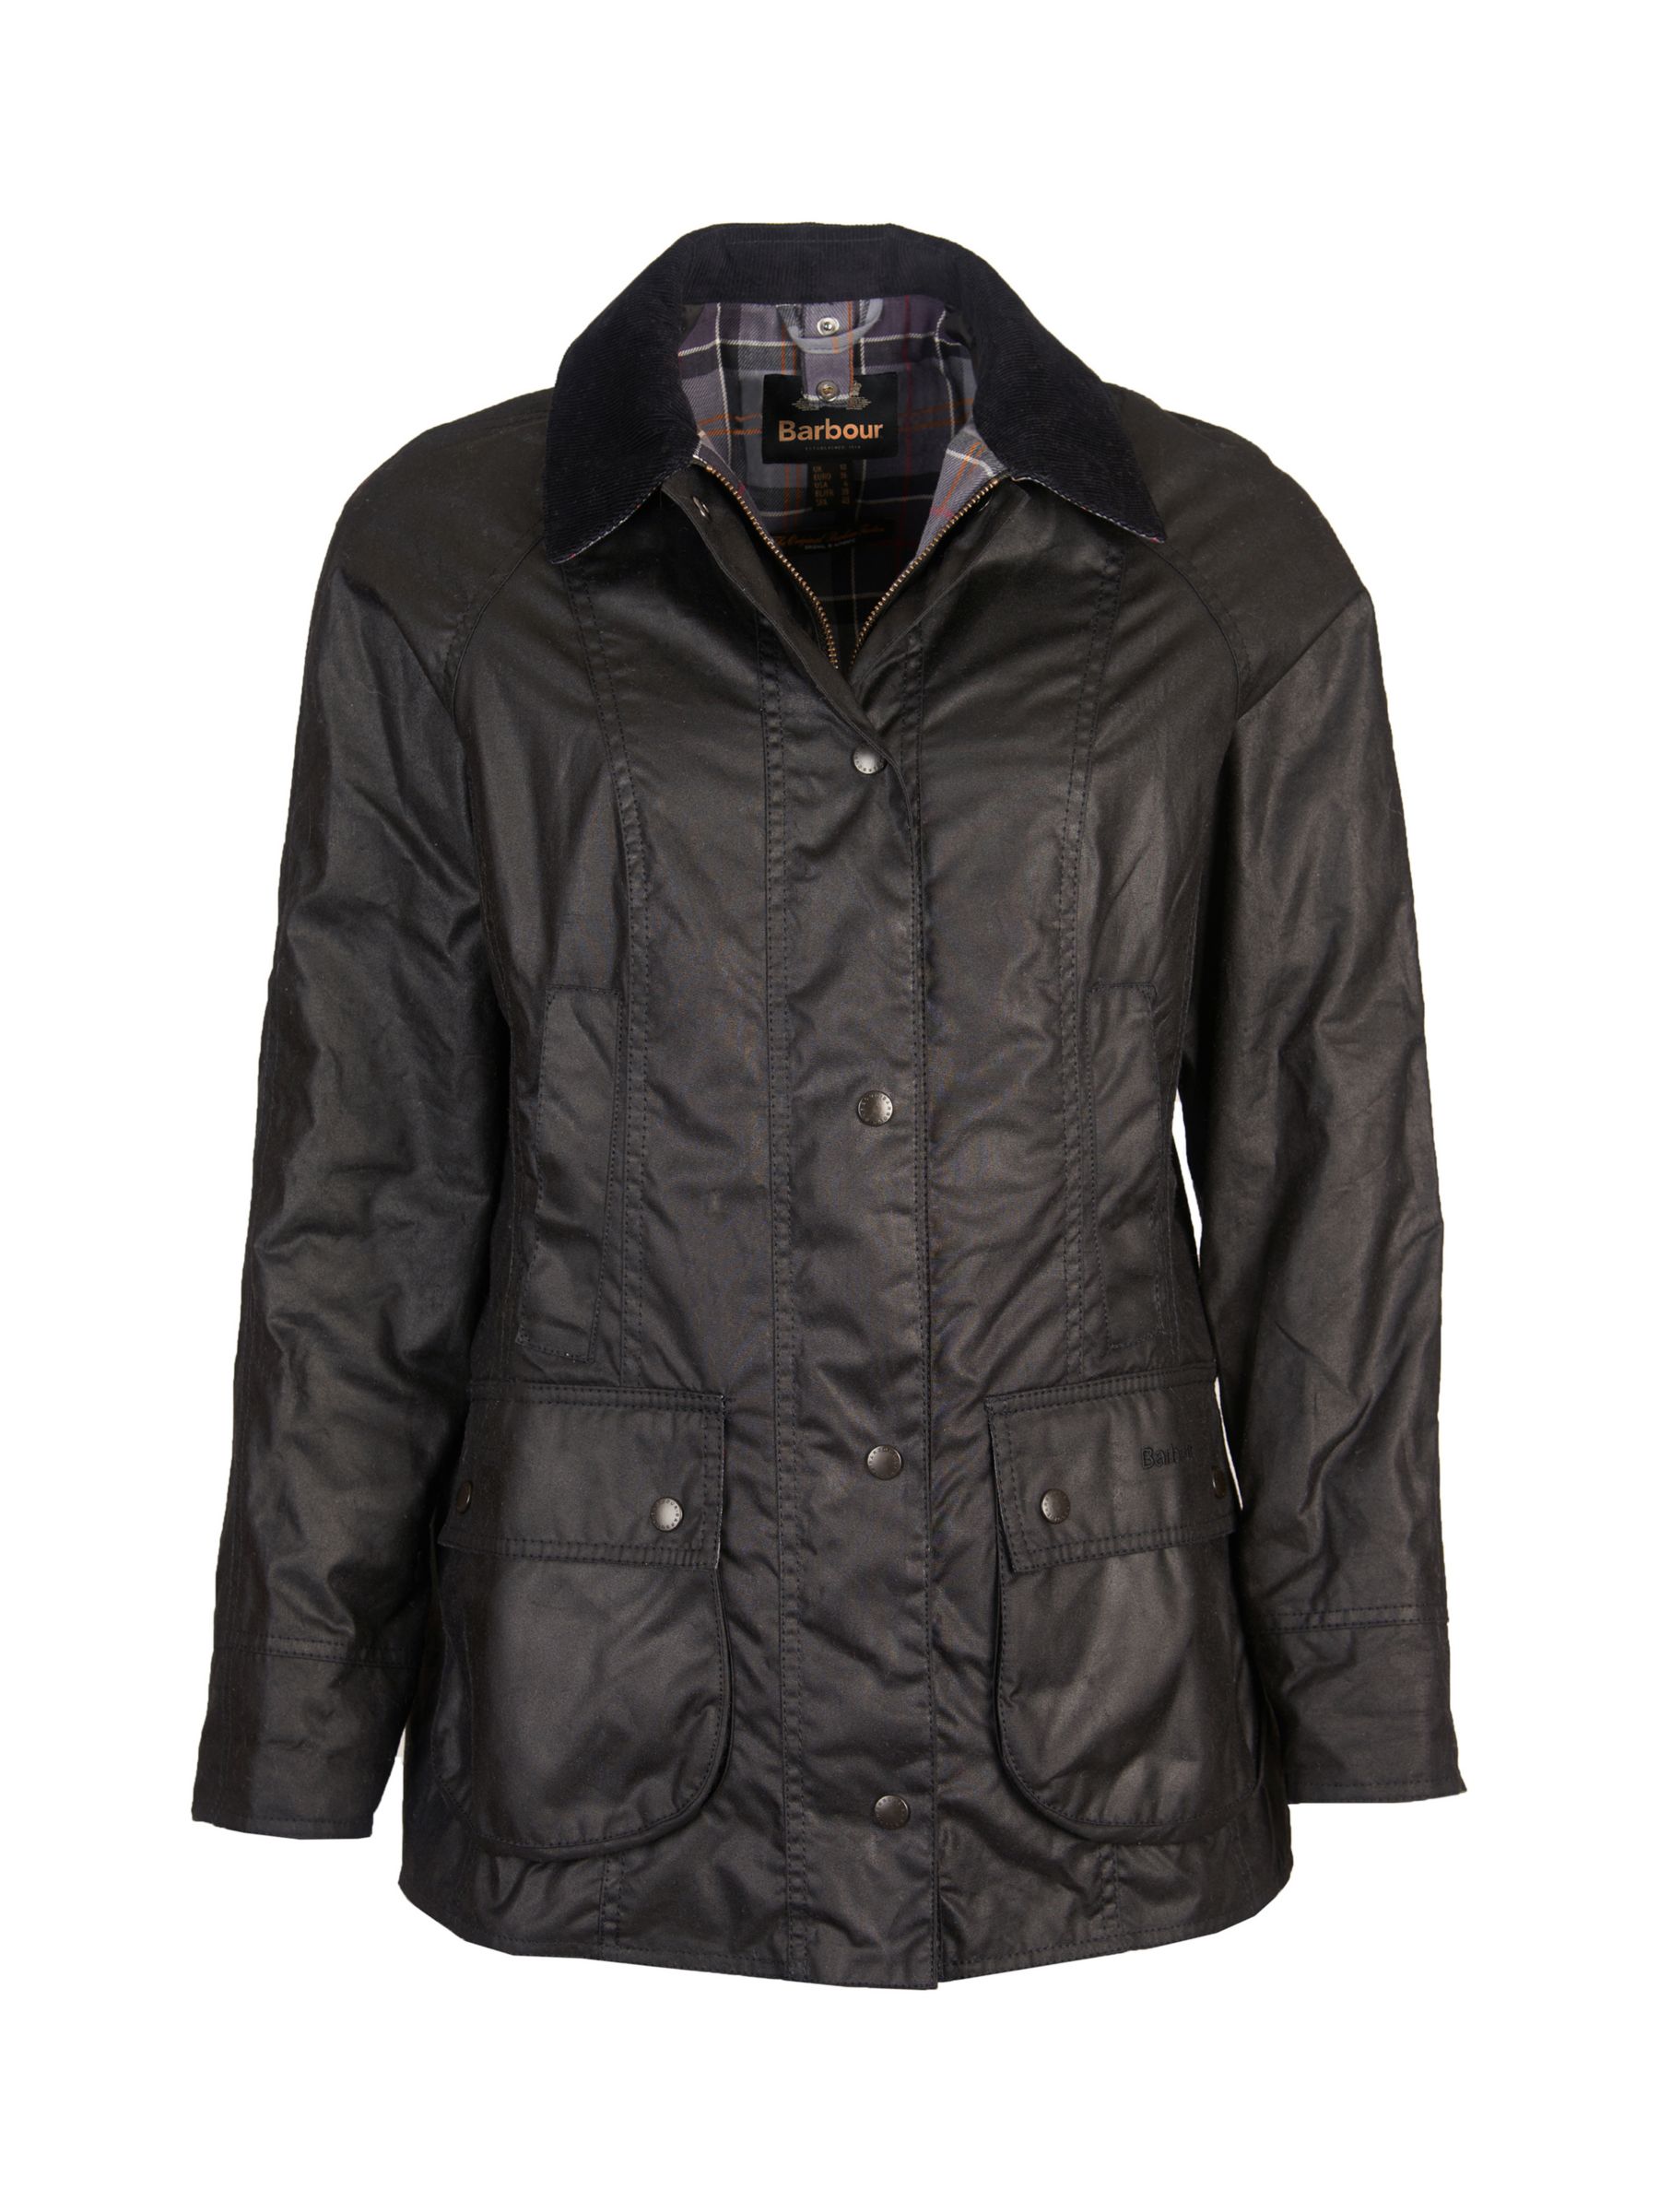 Barbour Bedale Plain Wax Jacket, Black at John Lewis & Partners